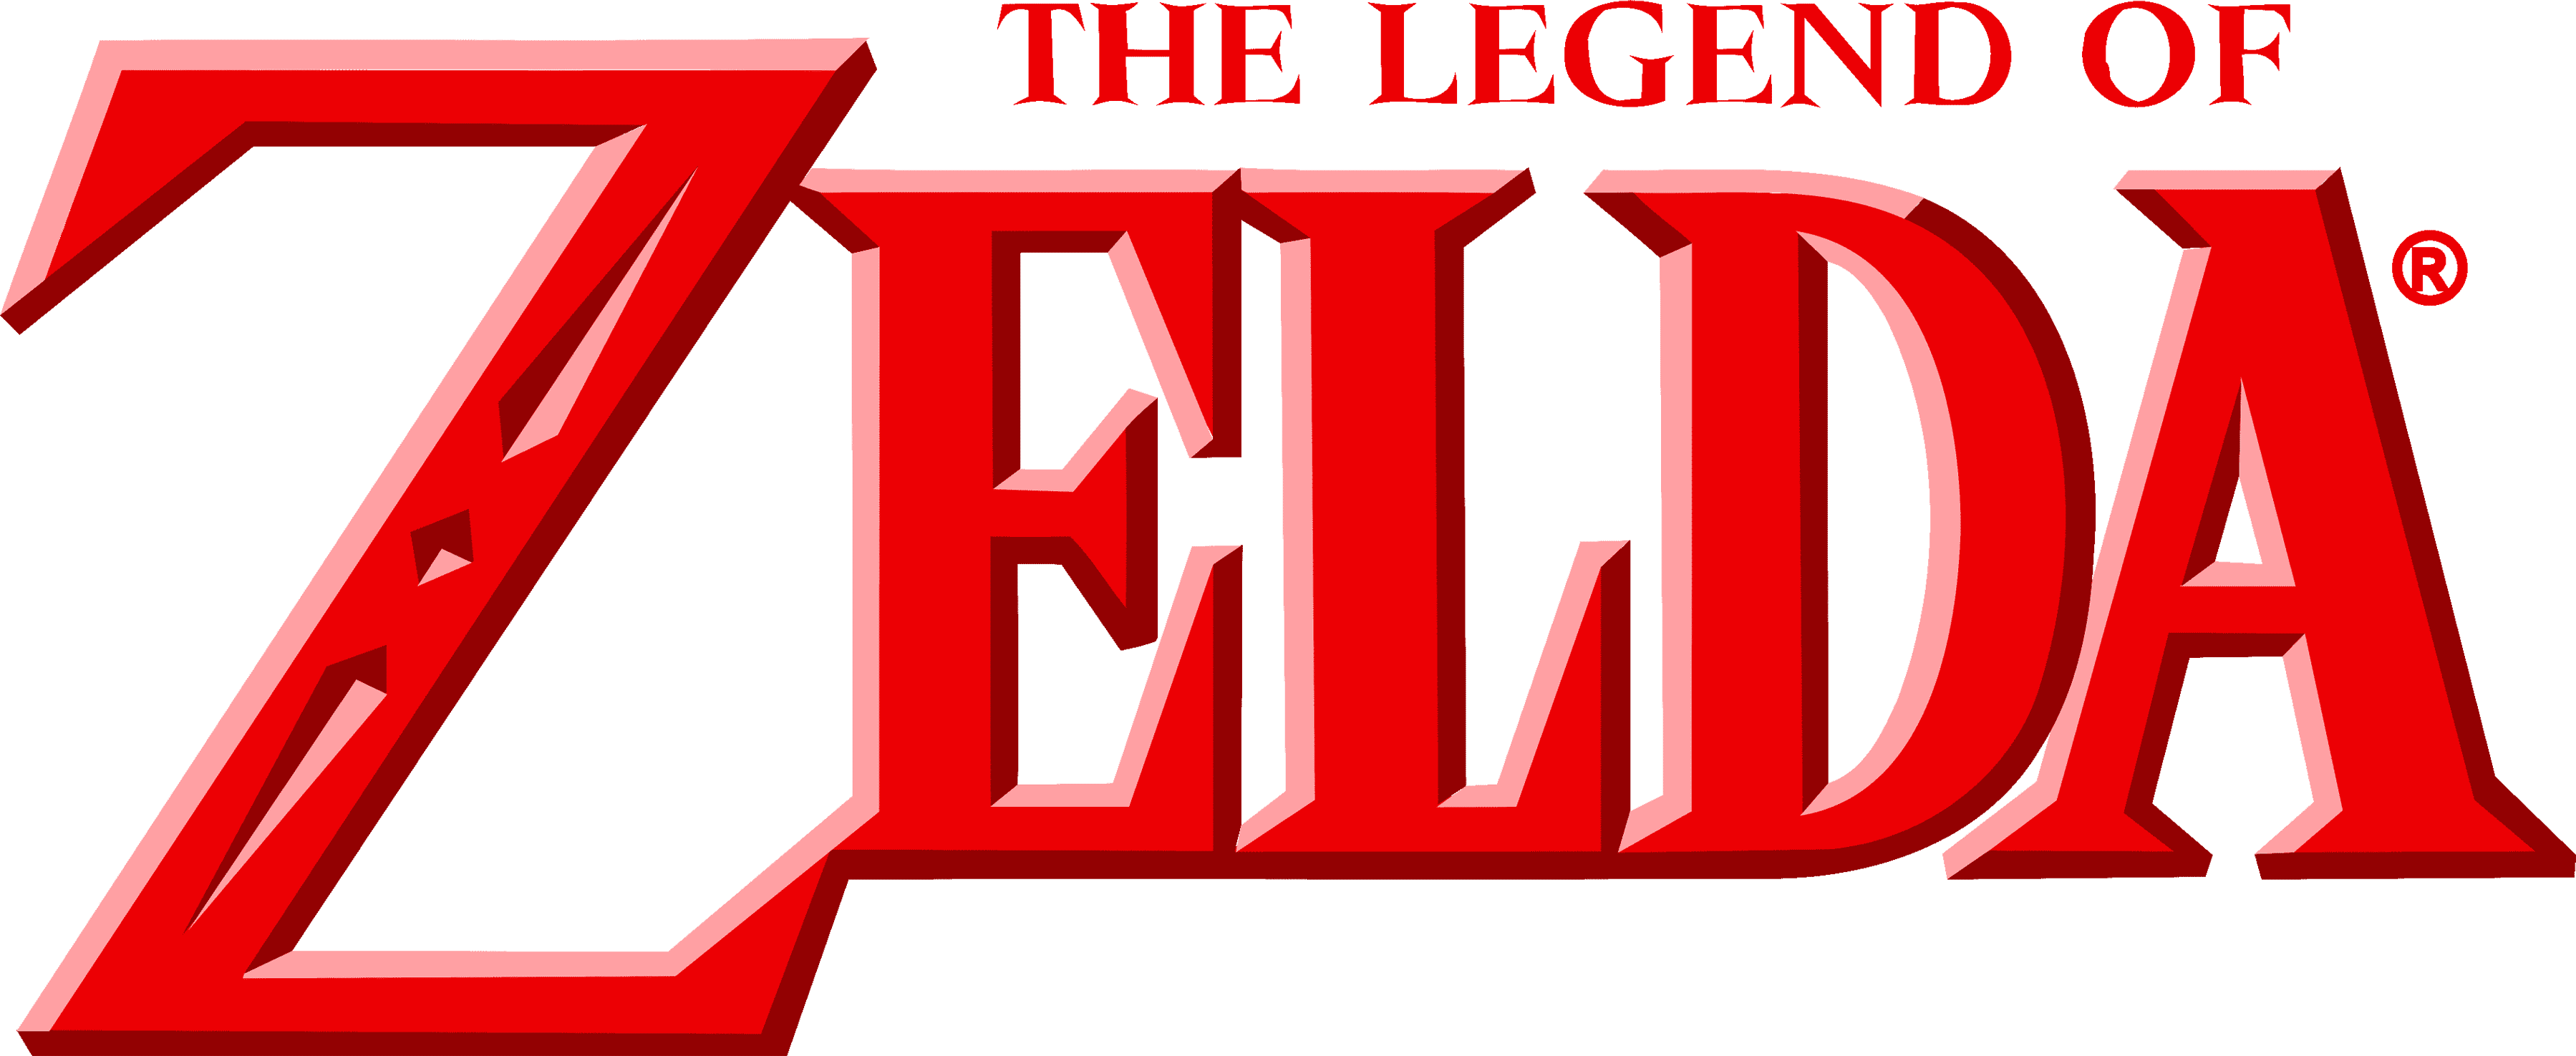 What is 'The Legend Of Zelda'?